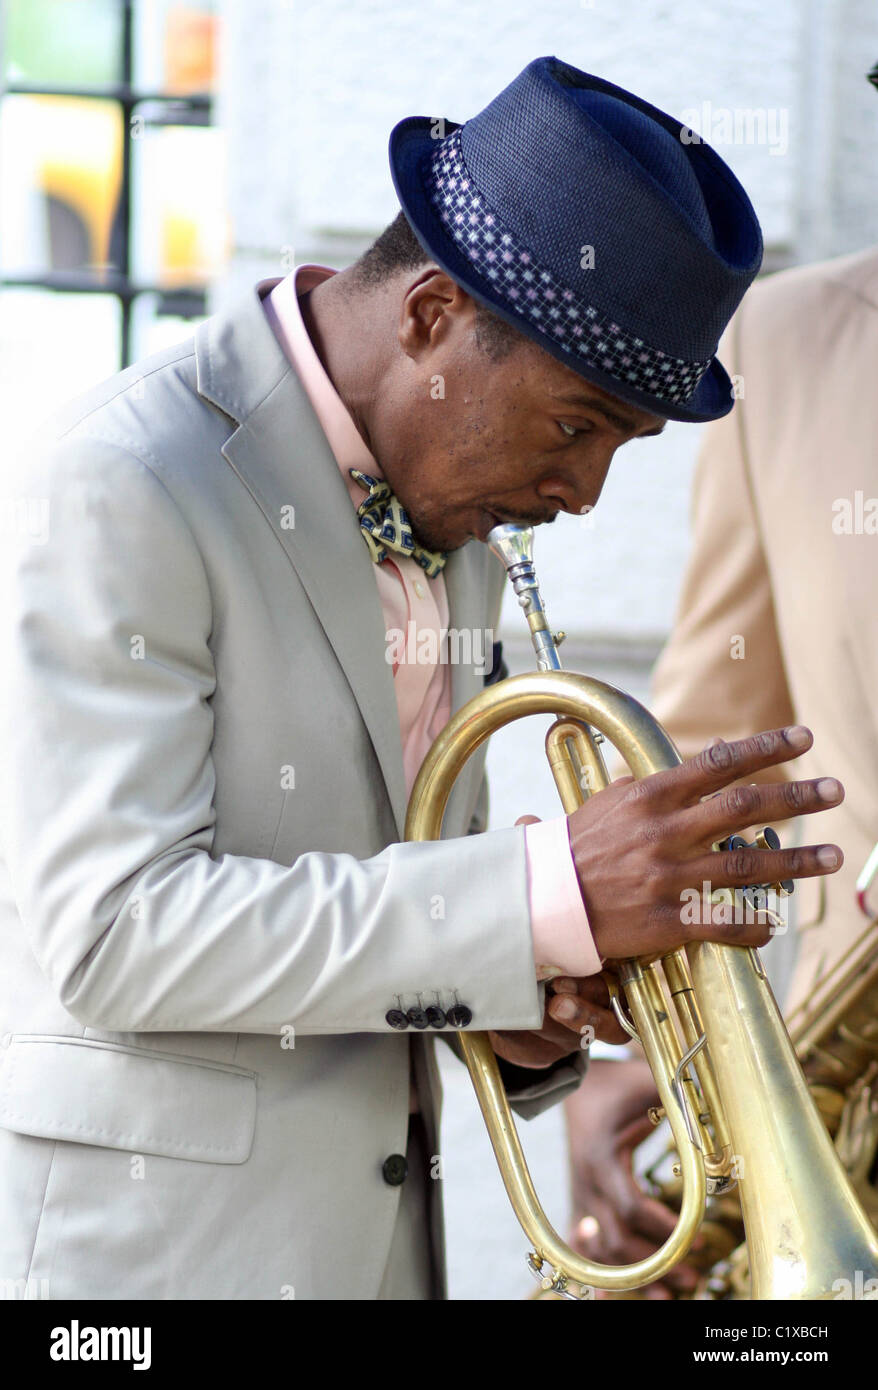 Jazz-Trompeter, Komponist und Bandleader Roy Hargrove J & R MusicFest 2009 an der City Hall Park New York City, USA - 29.08.09 Stockfoto